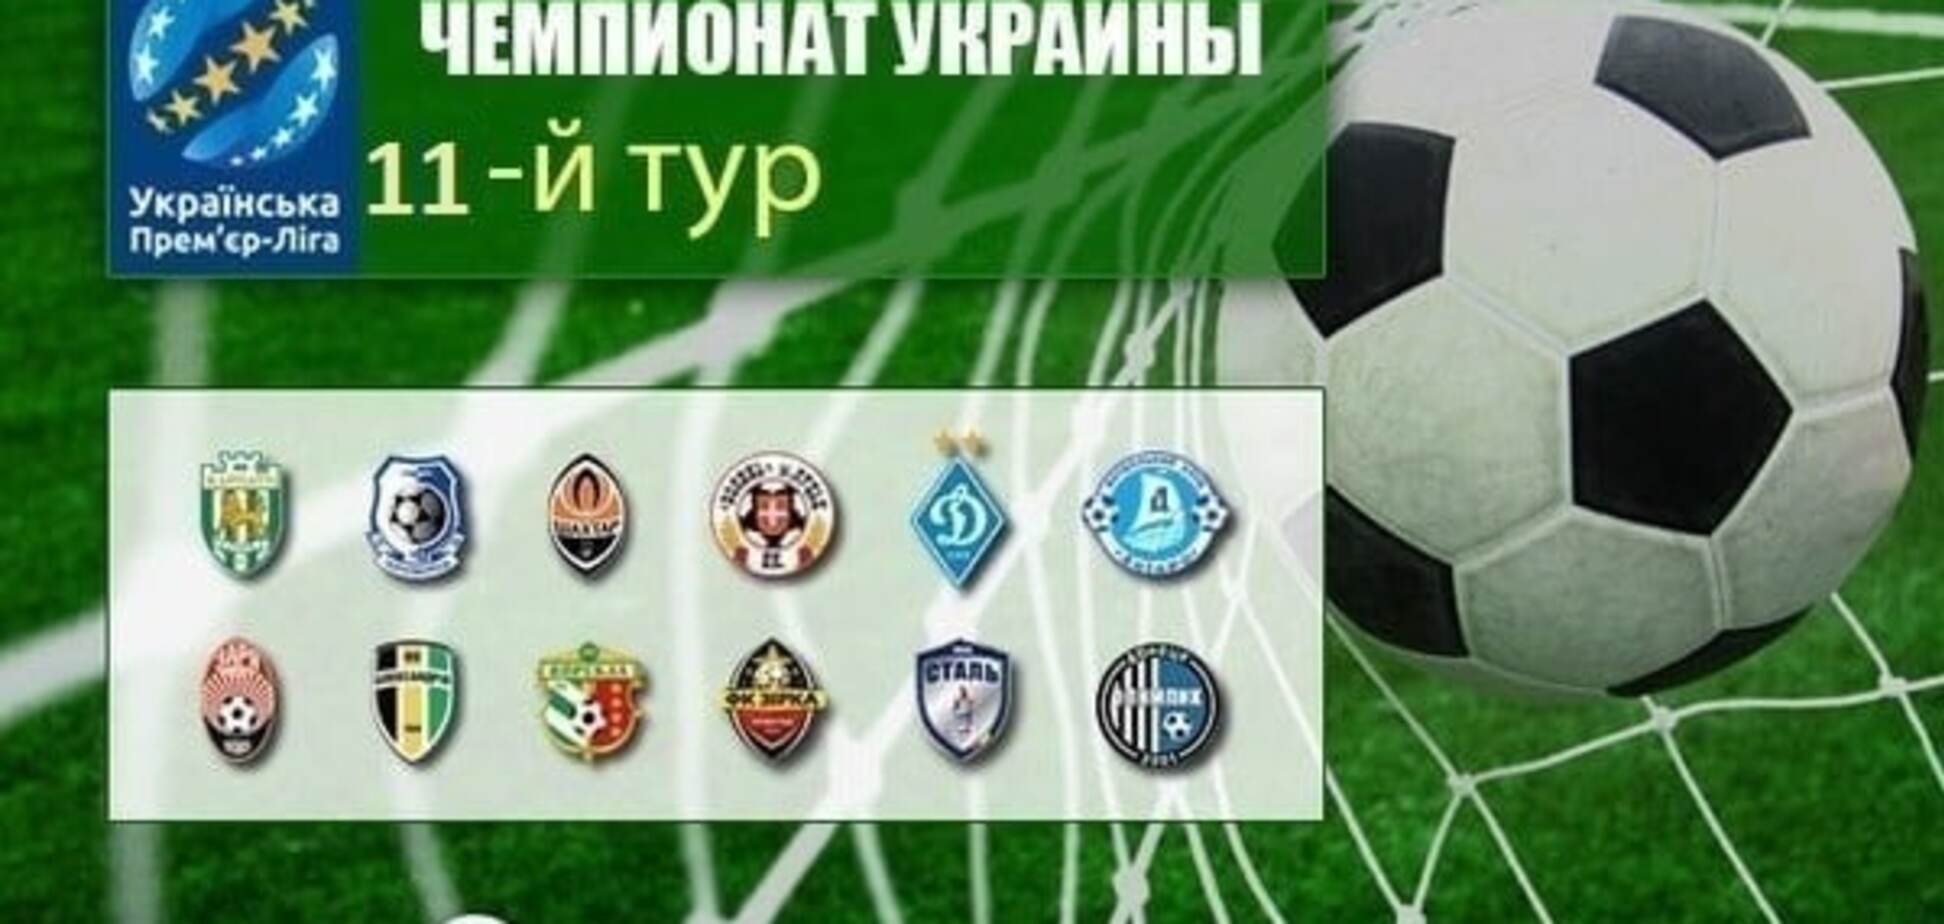 11-й тур чемпіонату України з футболу: результати, звіти, таблиця